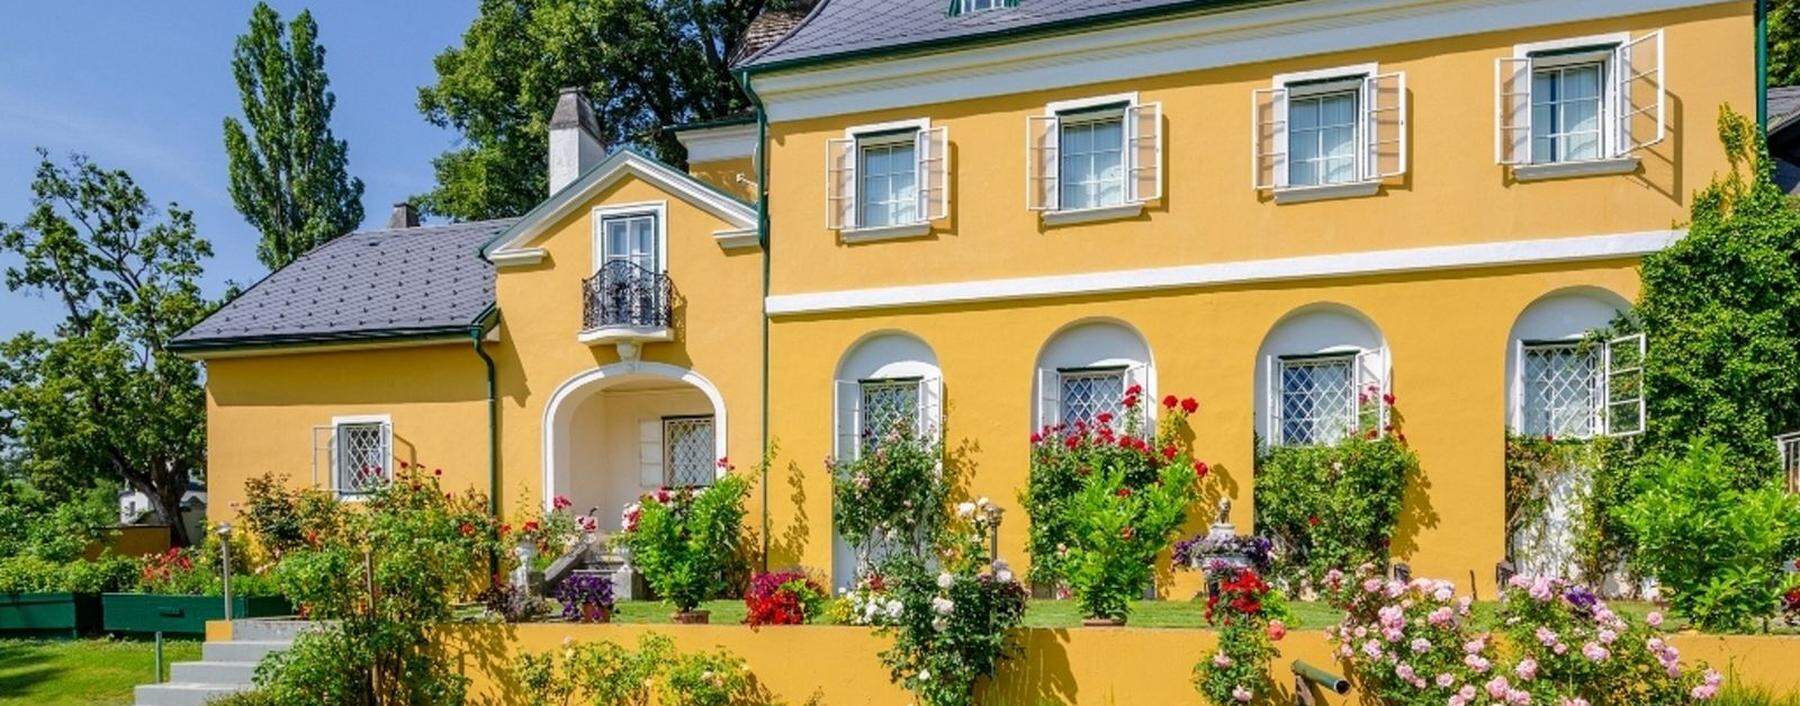 Rund um Wien sind Mikrolagen kaufentscheidend: Villa mit Garten in Gießhübel, Einfamilienhaus mit Weinkeller in Klosterneuburg und Jahrhundertwende-Rarität in Baden.